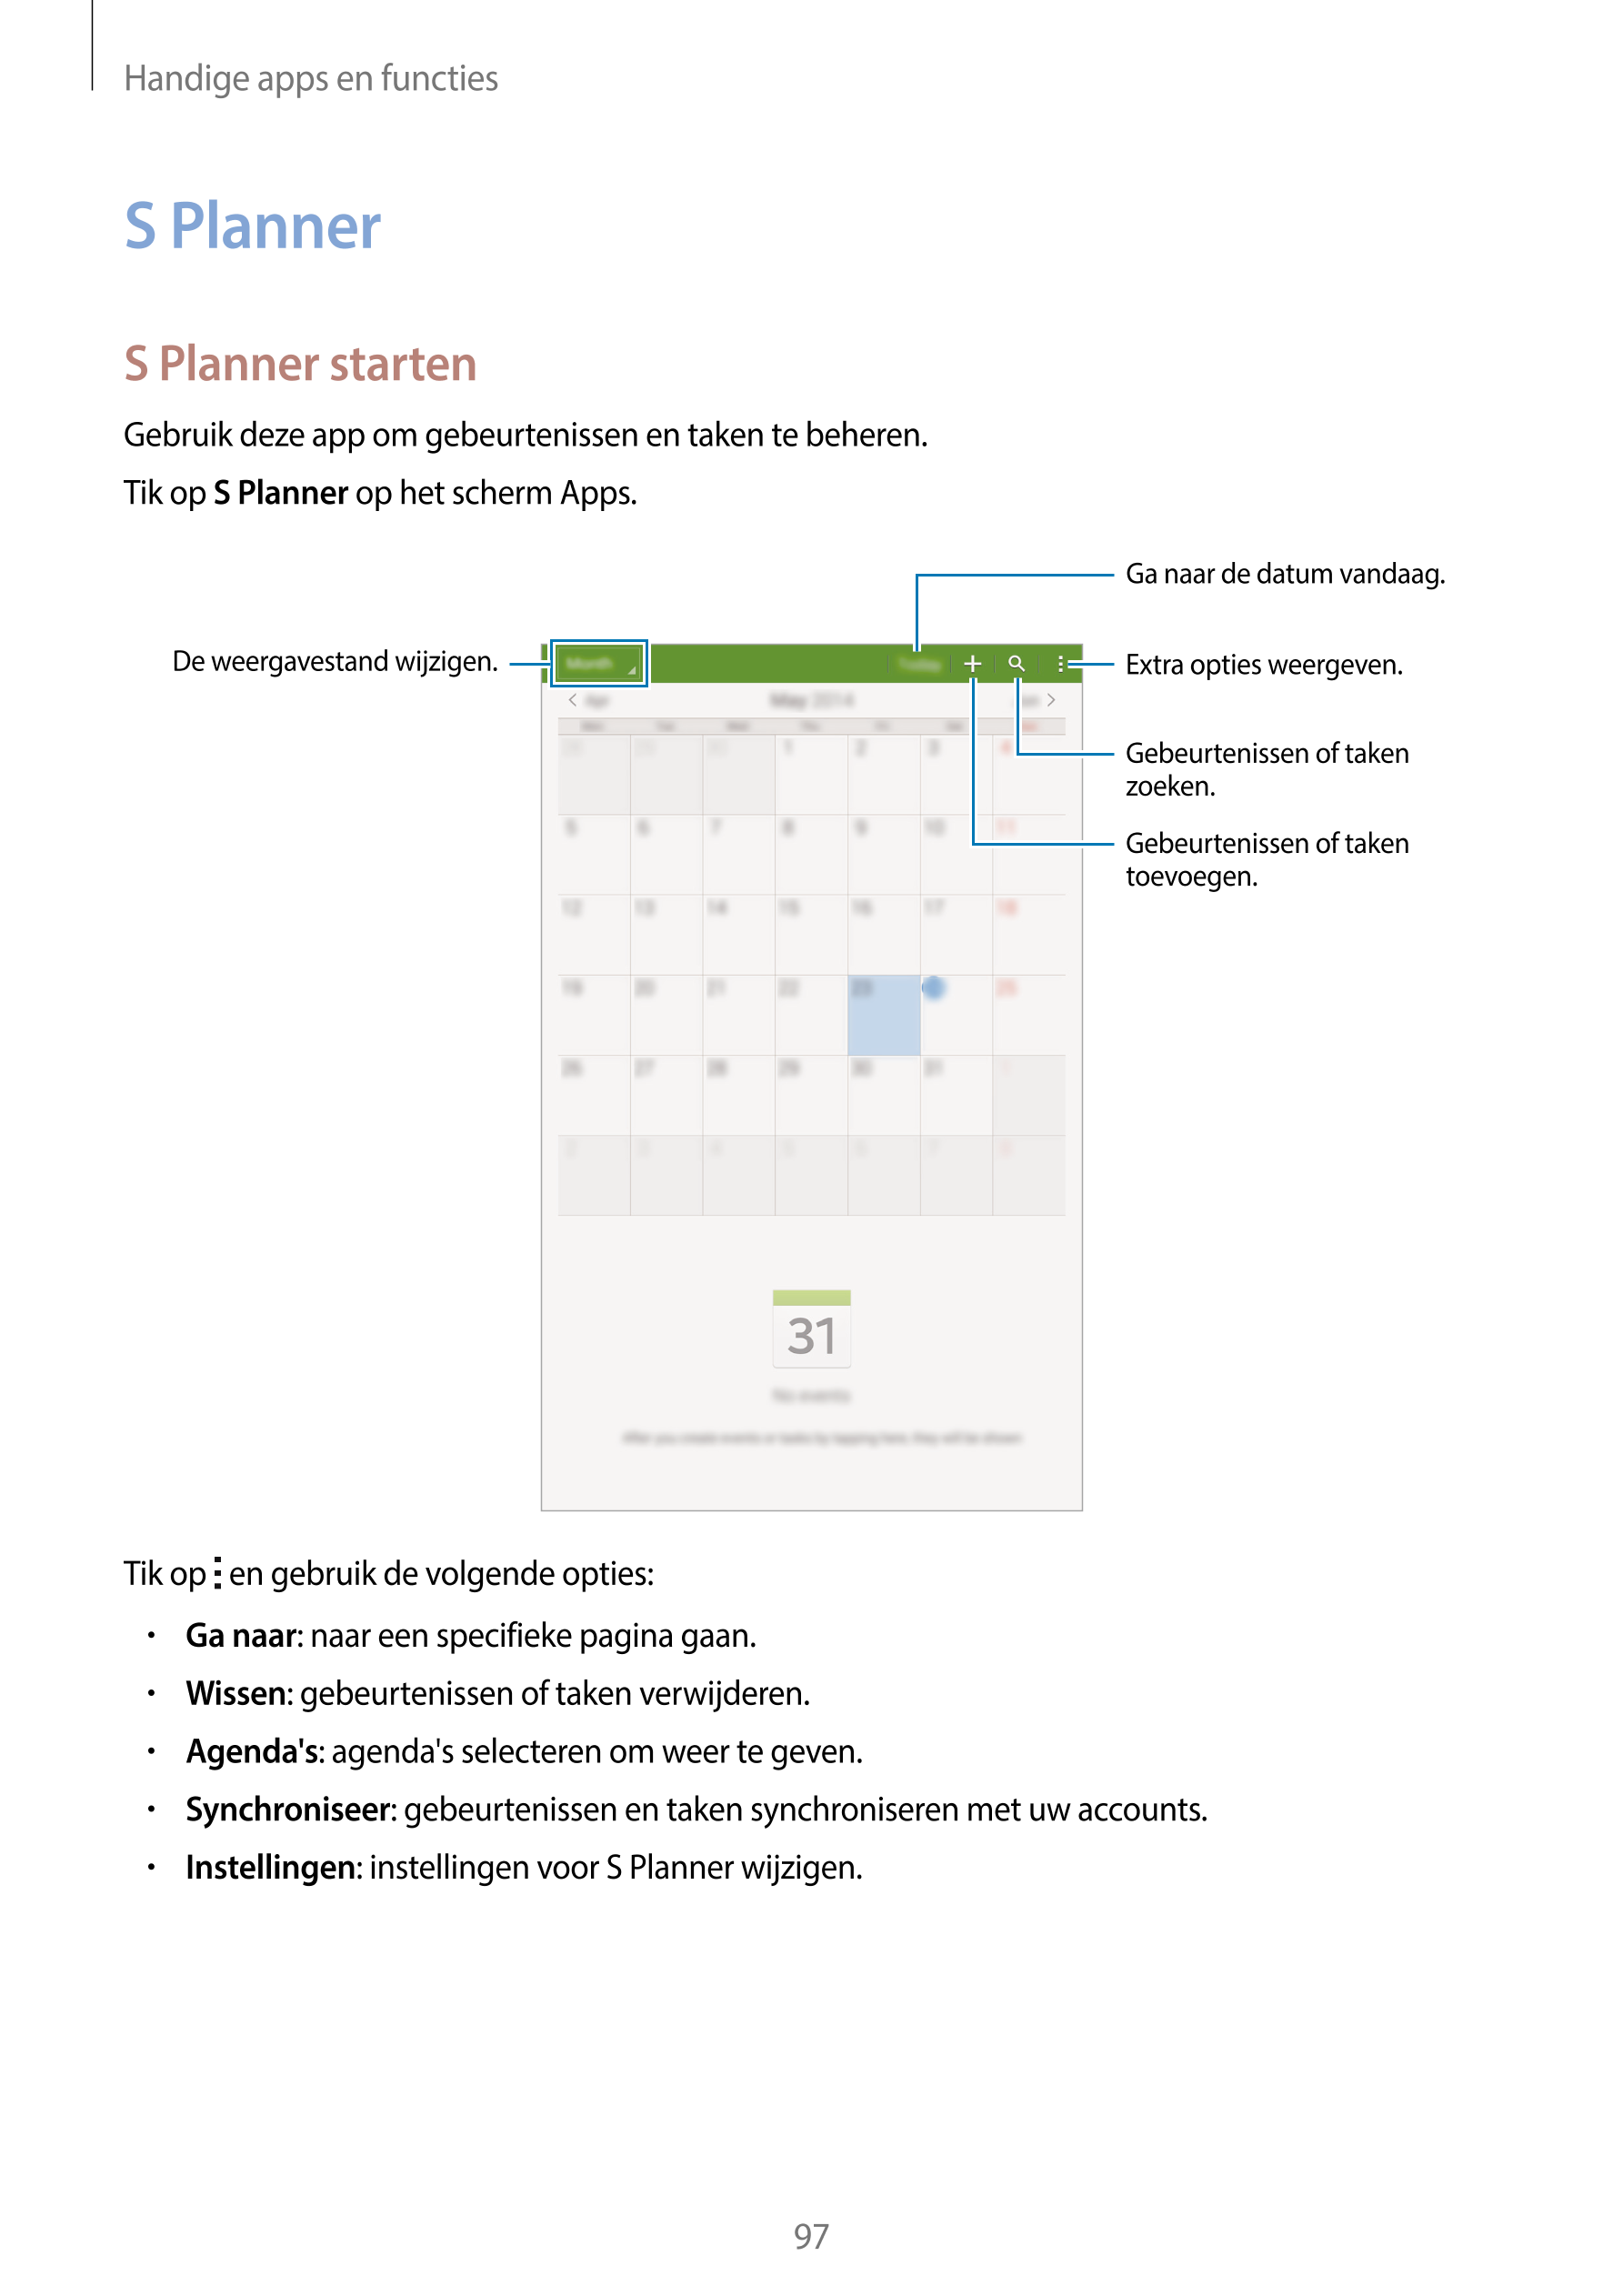 Handige apps en functies
S Planner
S Planner starten
Gebruik deze app om gebeurtenissen en taken te beheren.
Tik op  S Planner o